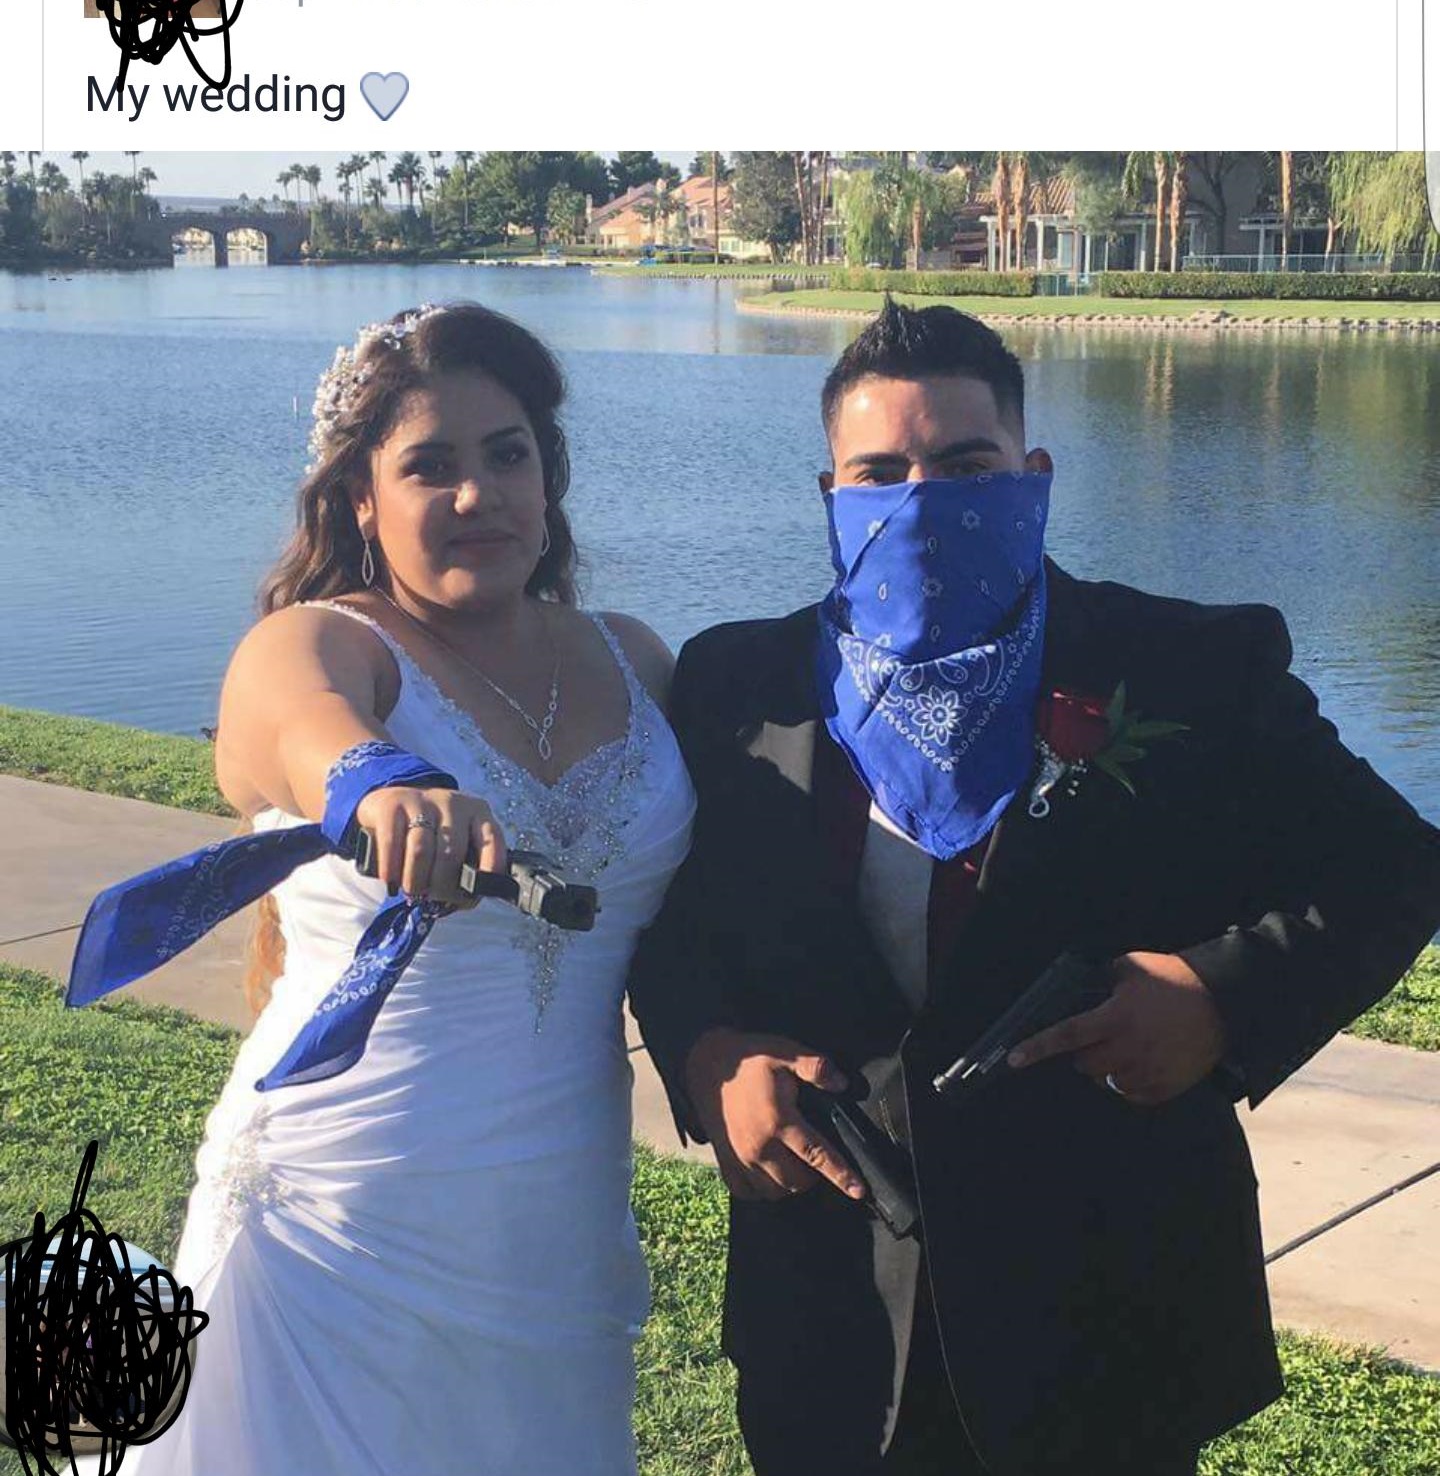 young thug instagram hacked - My wedding